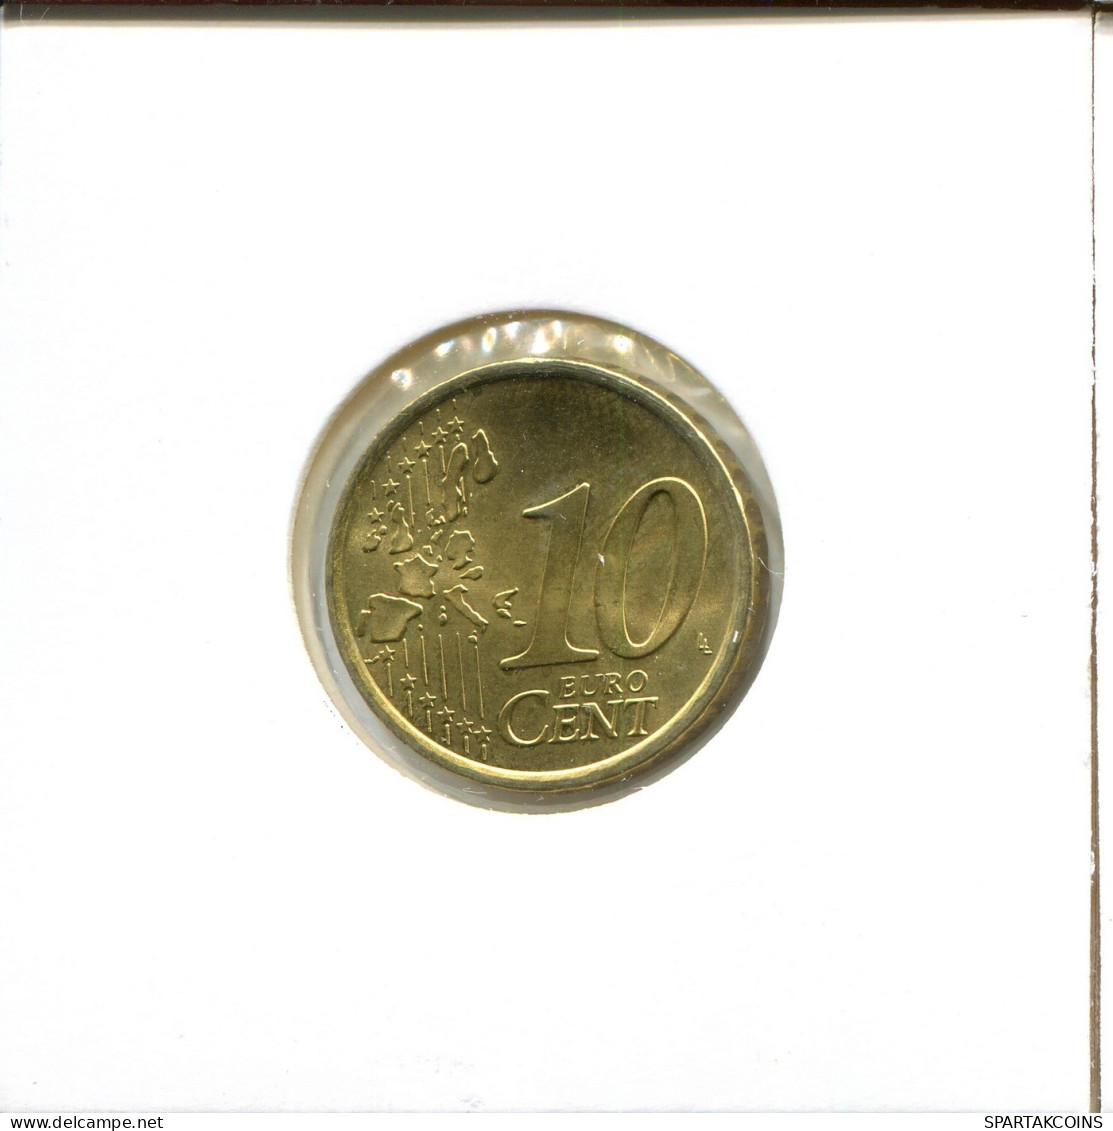 10 EURO CENTS 2006 ITALY Coin #EU511.U.A - Italy